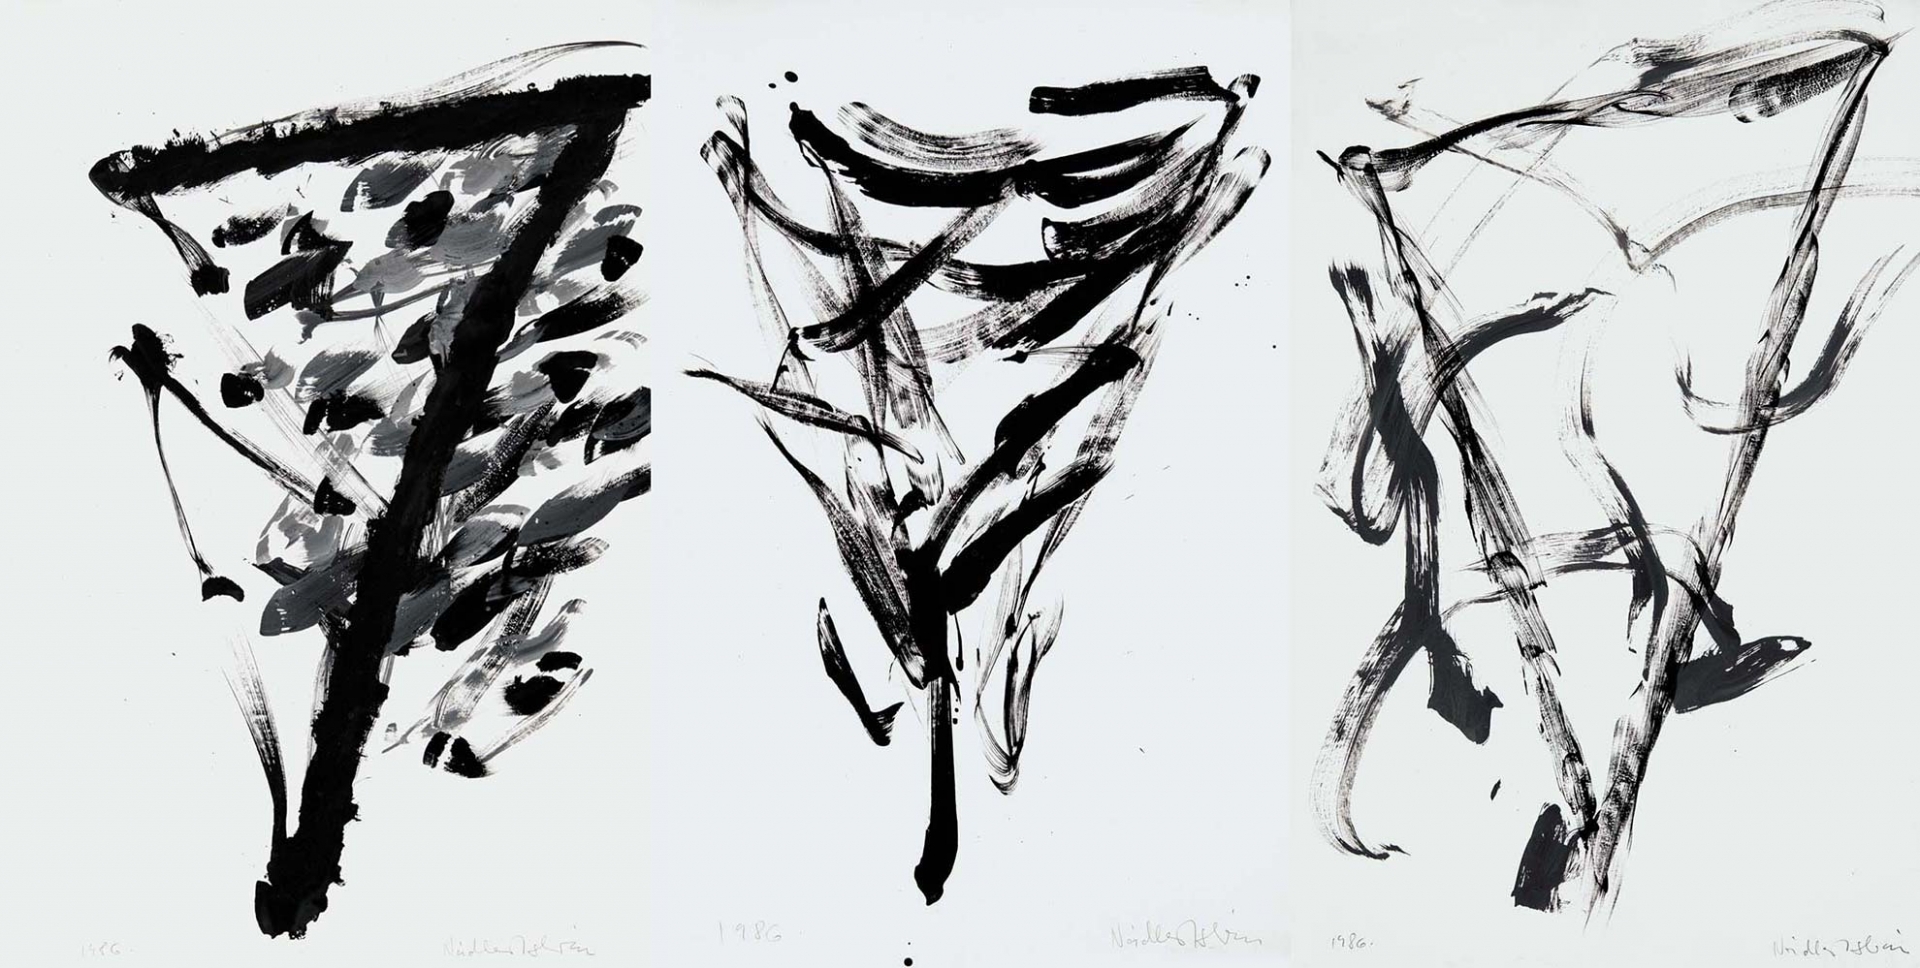 Nádler István (1938-) Triptych – Hommage á Malevich, 1986